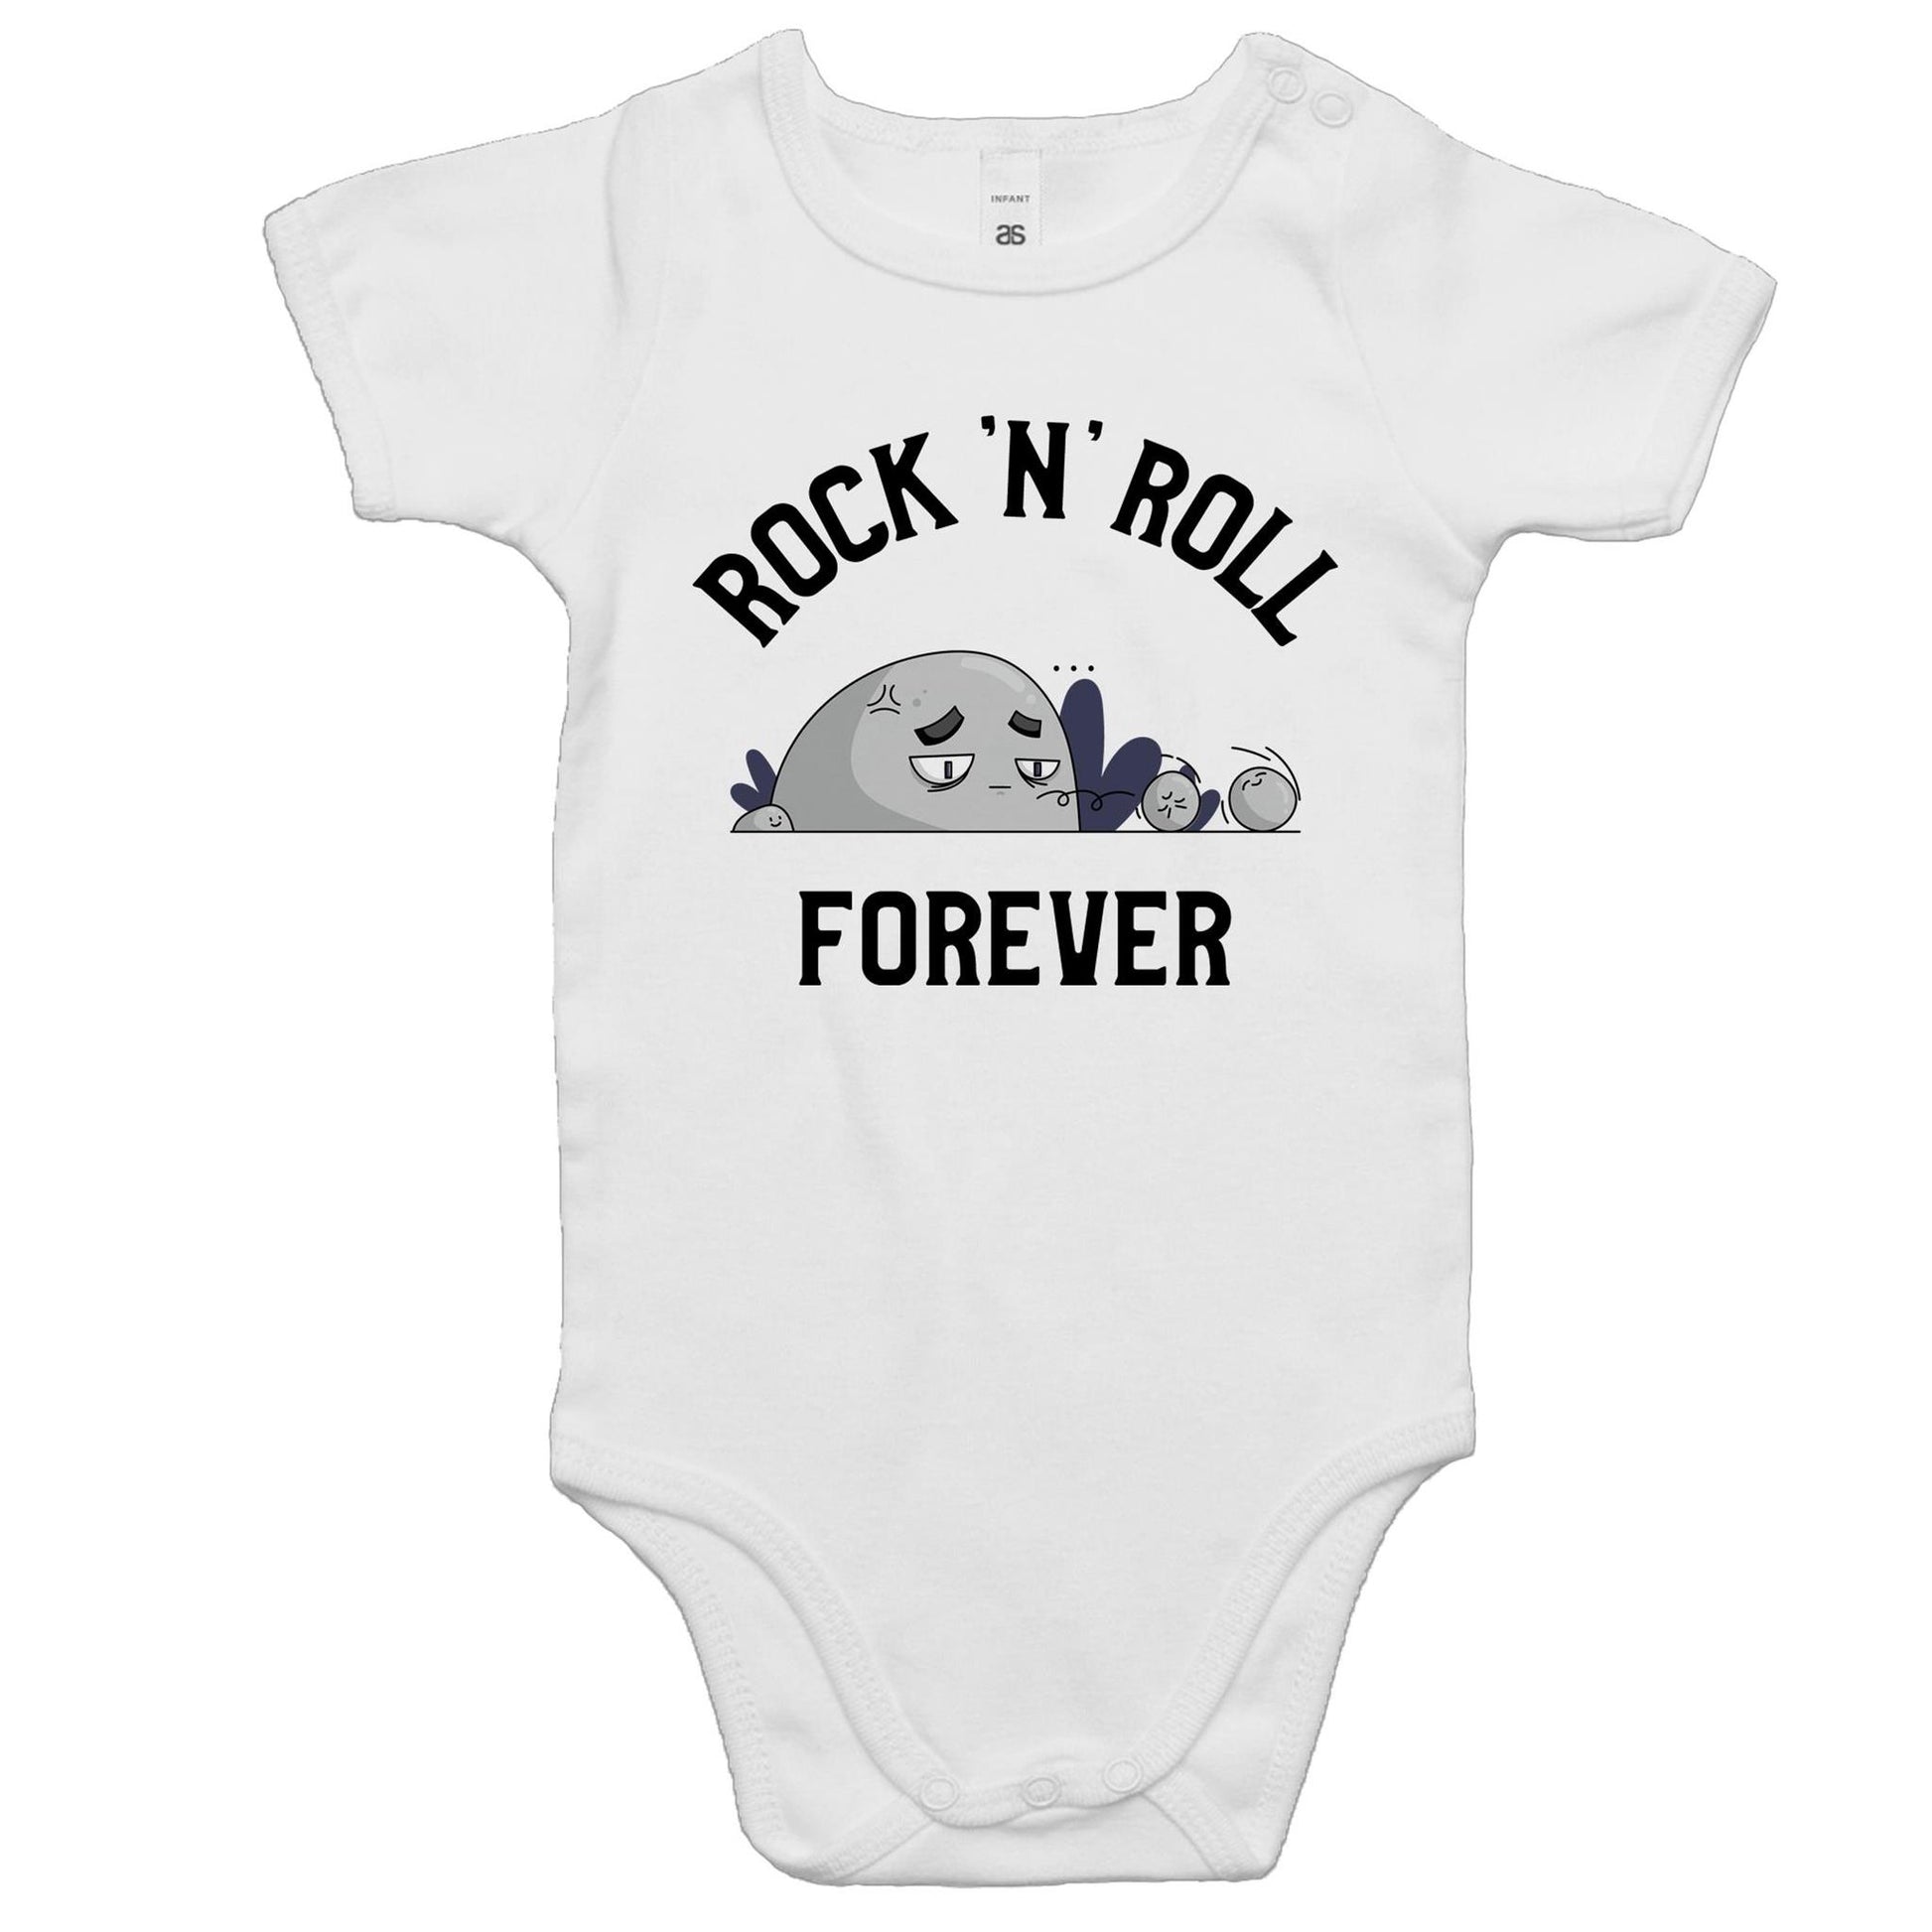 Rock 'N' Roll Forever - Baby Bodysuit White Baby Bodysuit Music